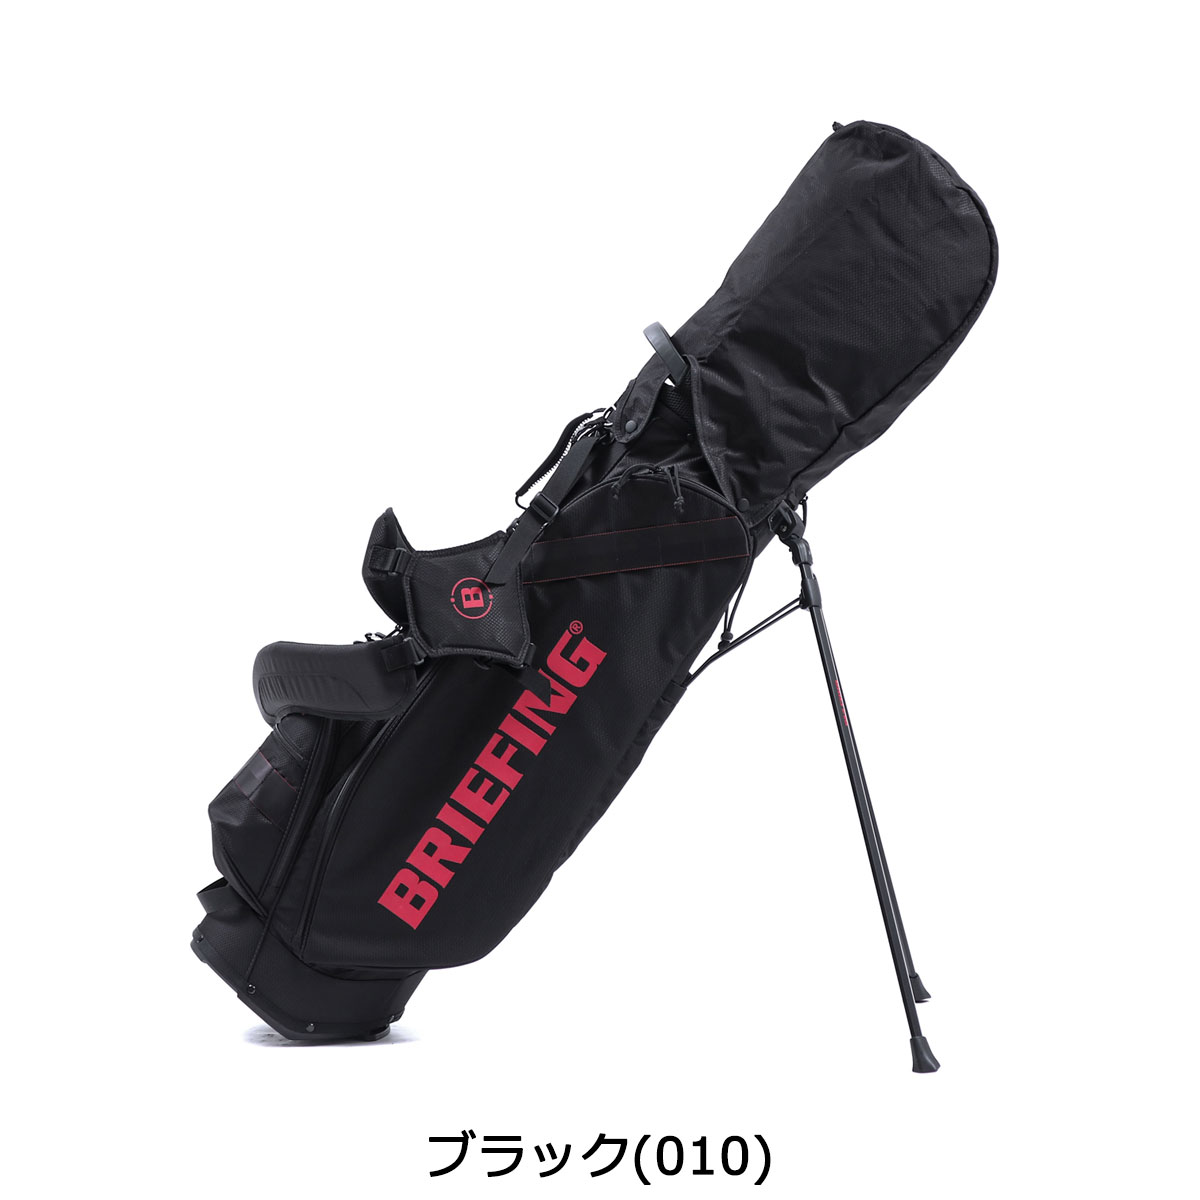 新発売の キャディバッグ ゴルフ ブリーフィング 日本正規品 BRIEFING BRG203D25 軽量 スタンド ゴルフバッグ 8.5型  SERIES CORDURASPECTRA CR-7 GOLF バッグ・ケース